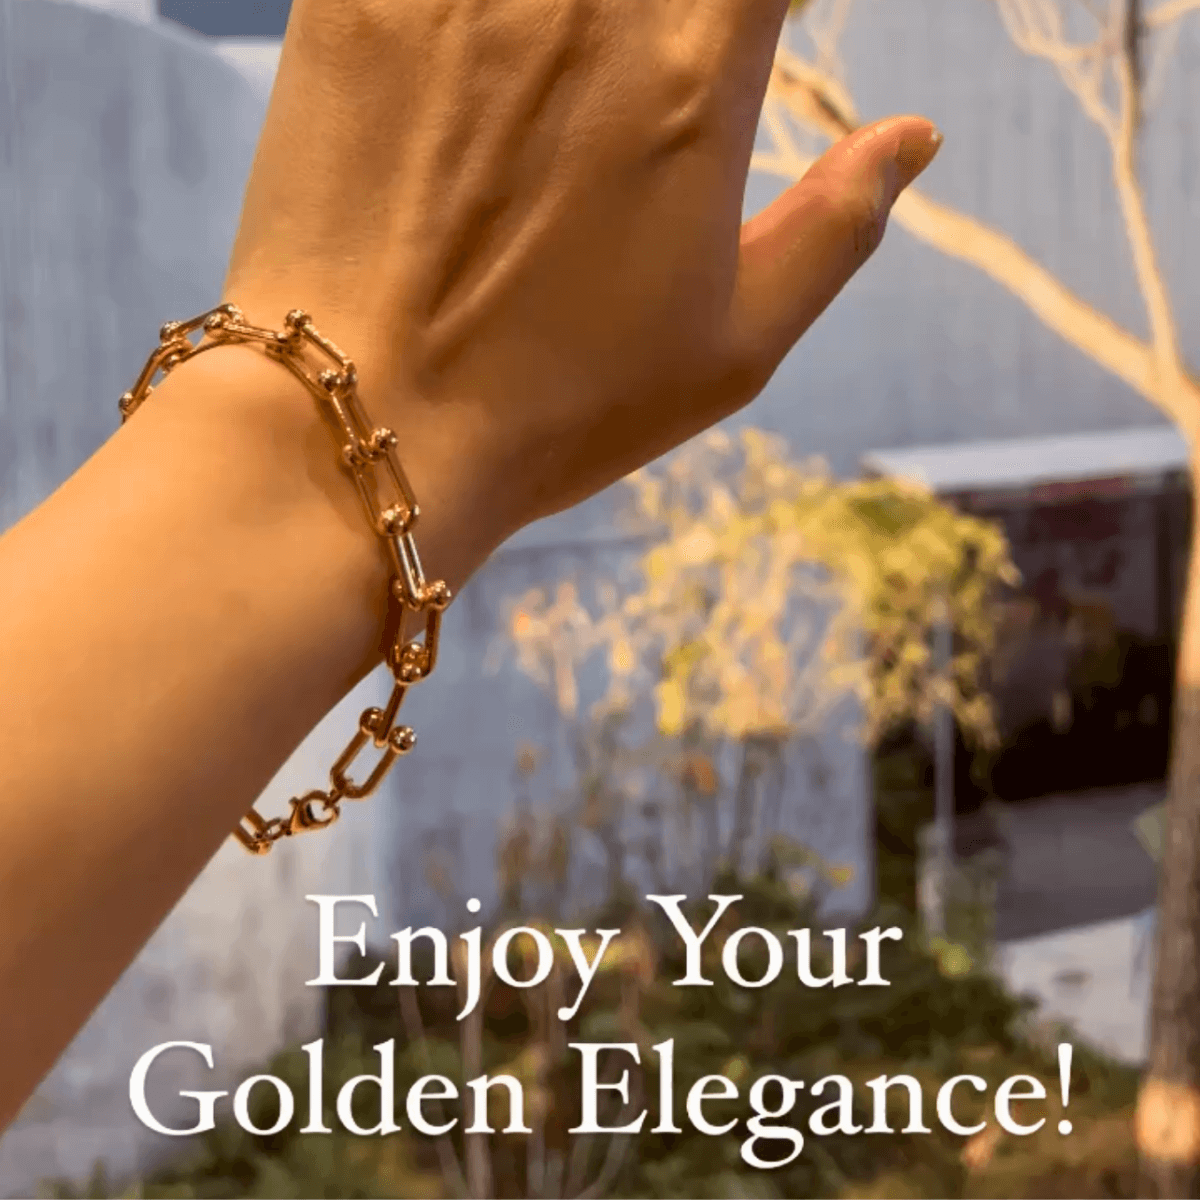 Women's 18K Link Bracelet Hardware Chain Bracelet Golden Bracelet Hardware Link Bracelet